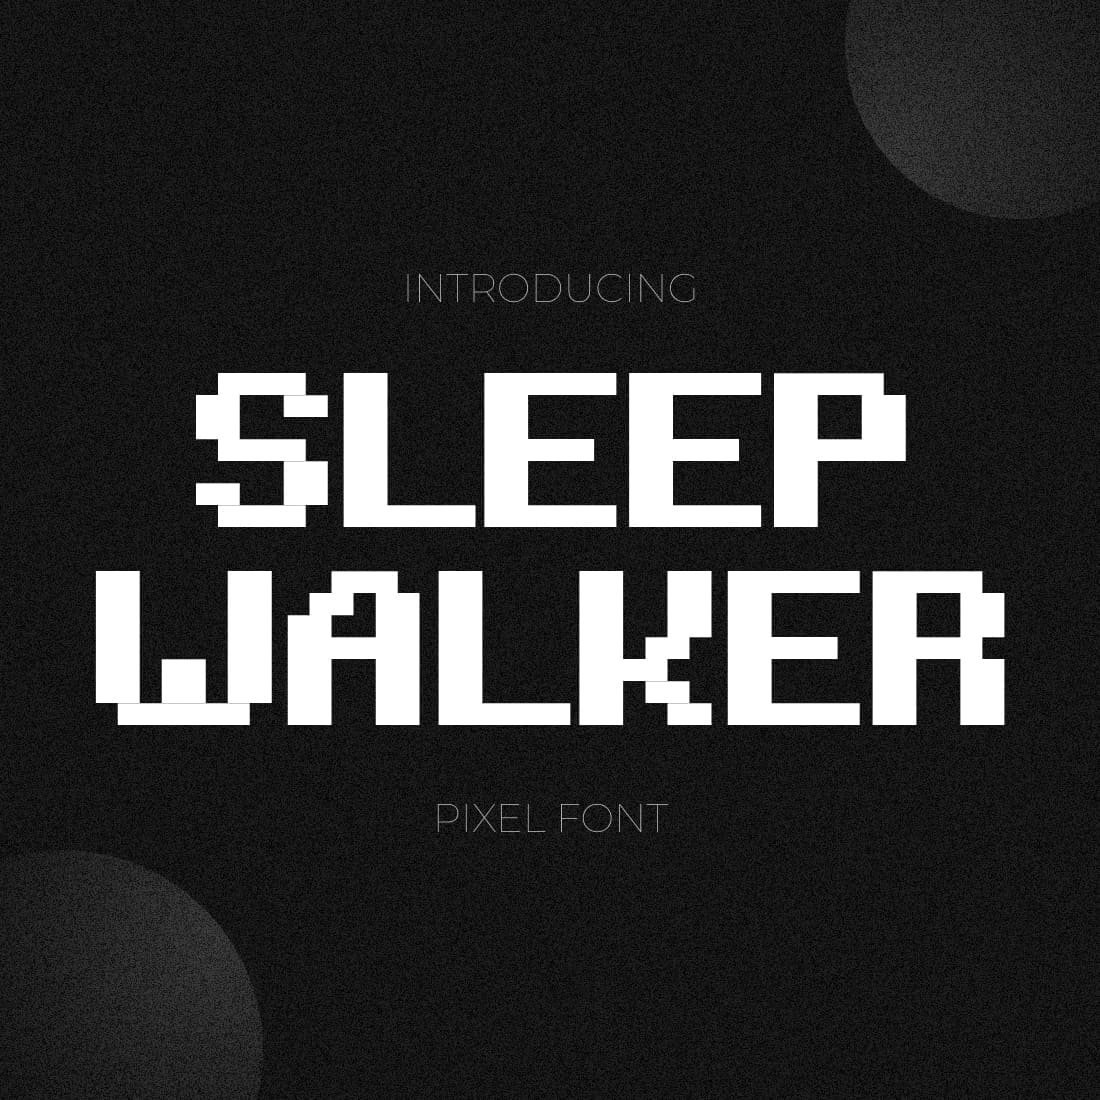 Sleepwalker Pixel Font Example.